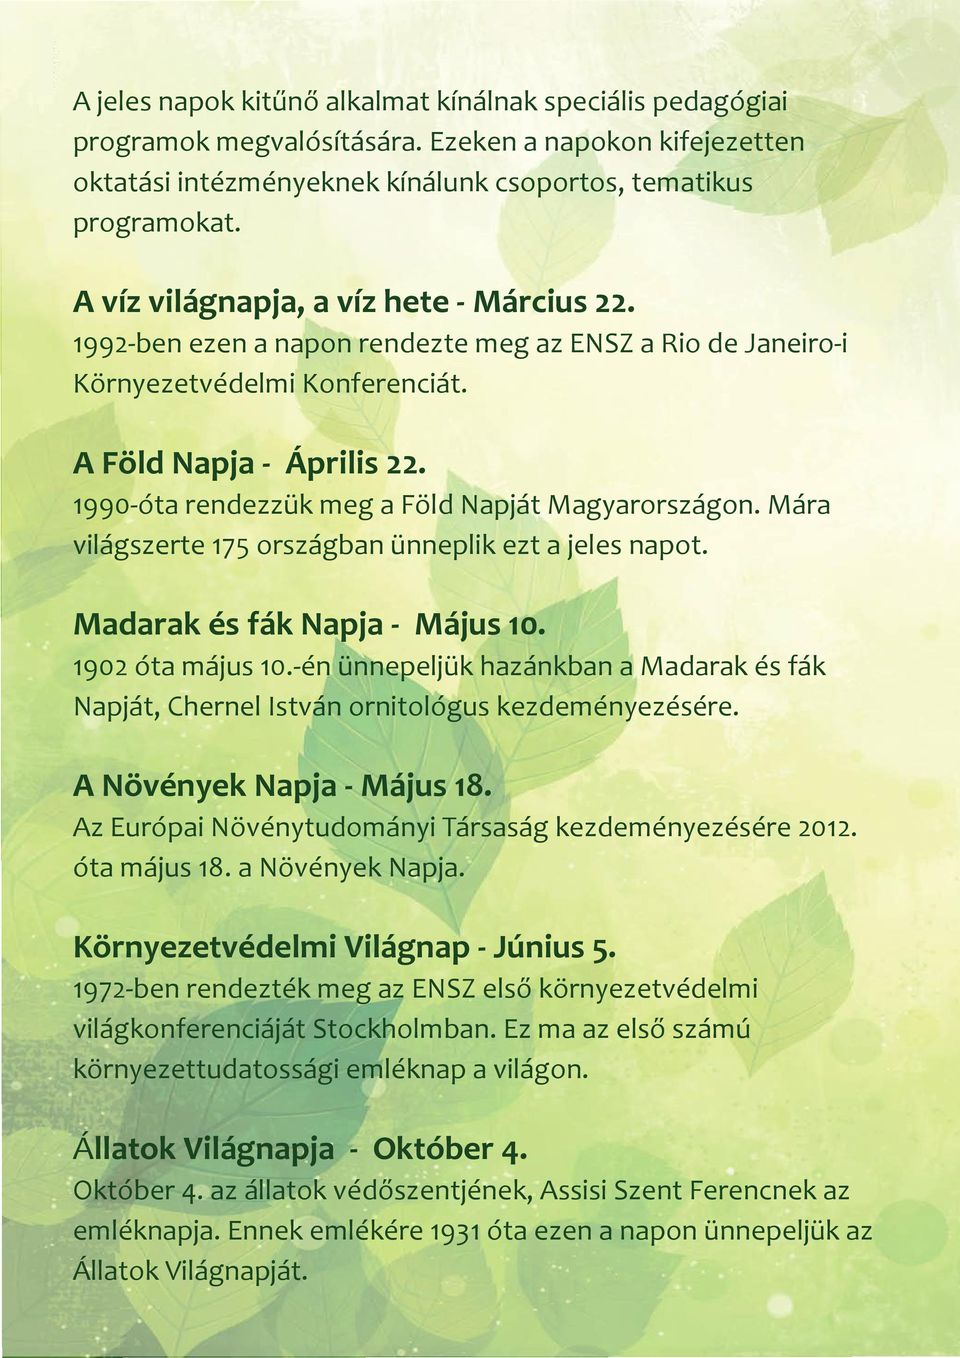 1990-óta rendezzük meg a Föld Napját Magyarországon. Mára világszerte 175 országban ünneplik ezt a jeles napot. Madarak és fák Napja - Május 10. 1902 óta május 10.